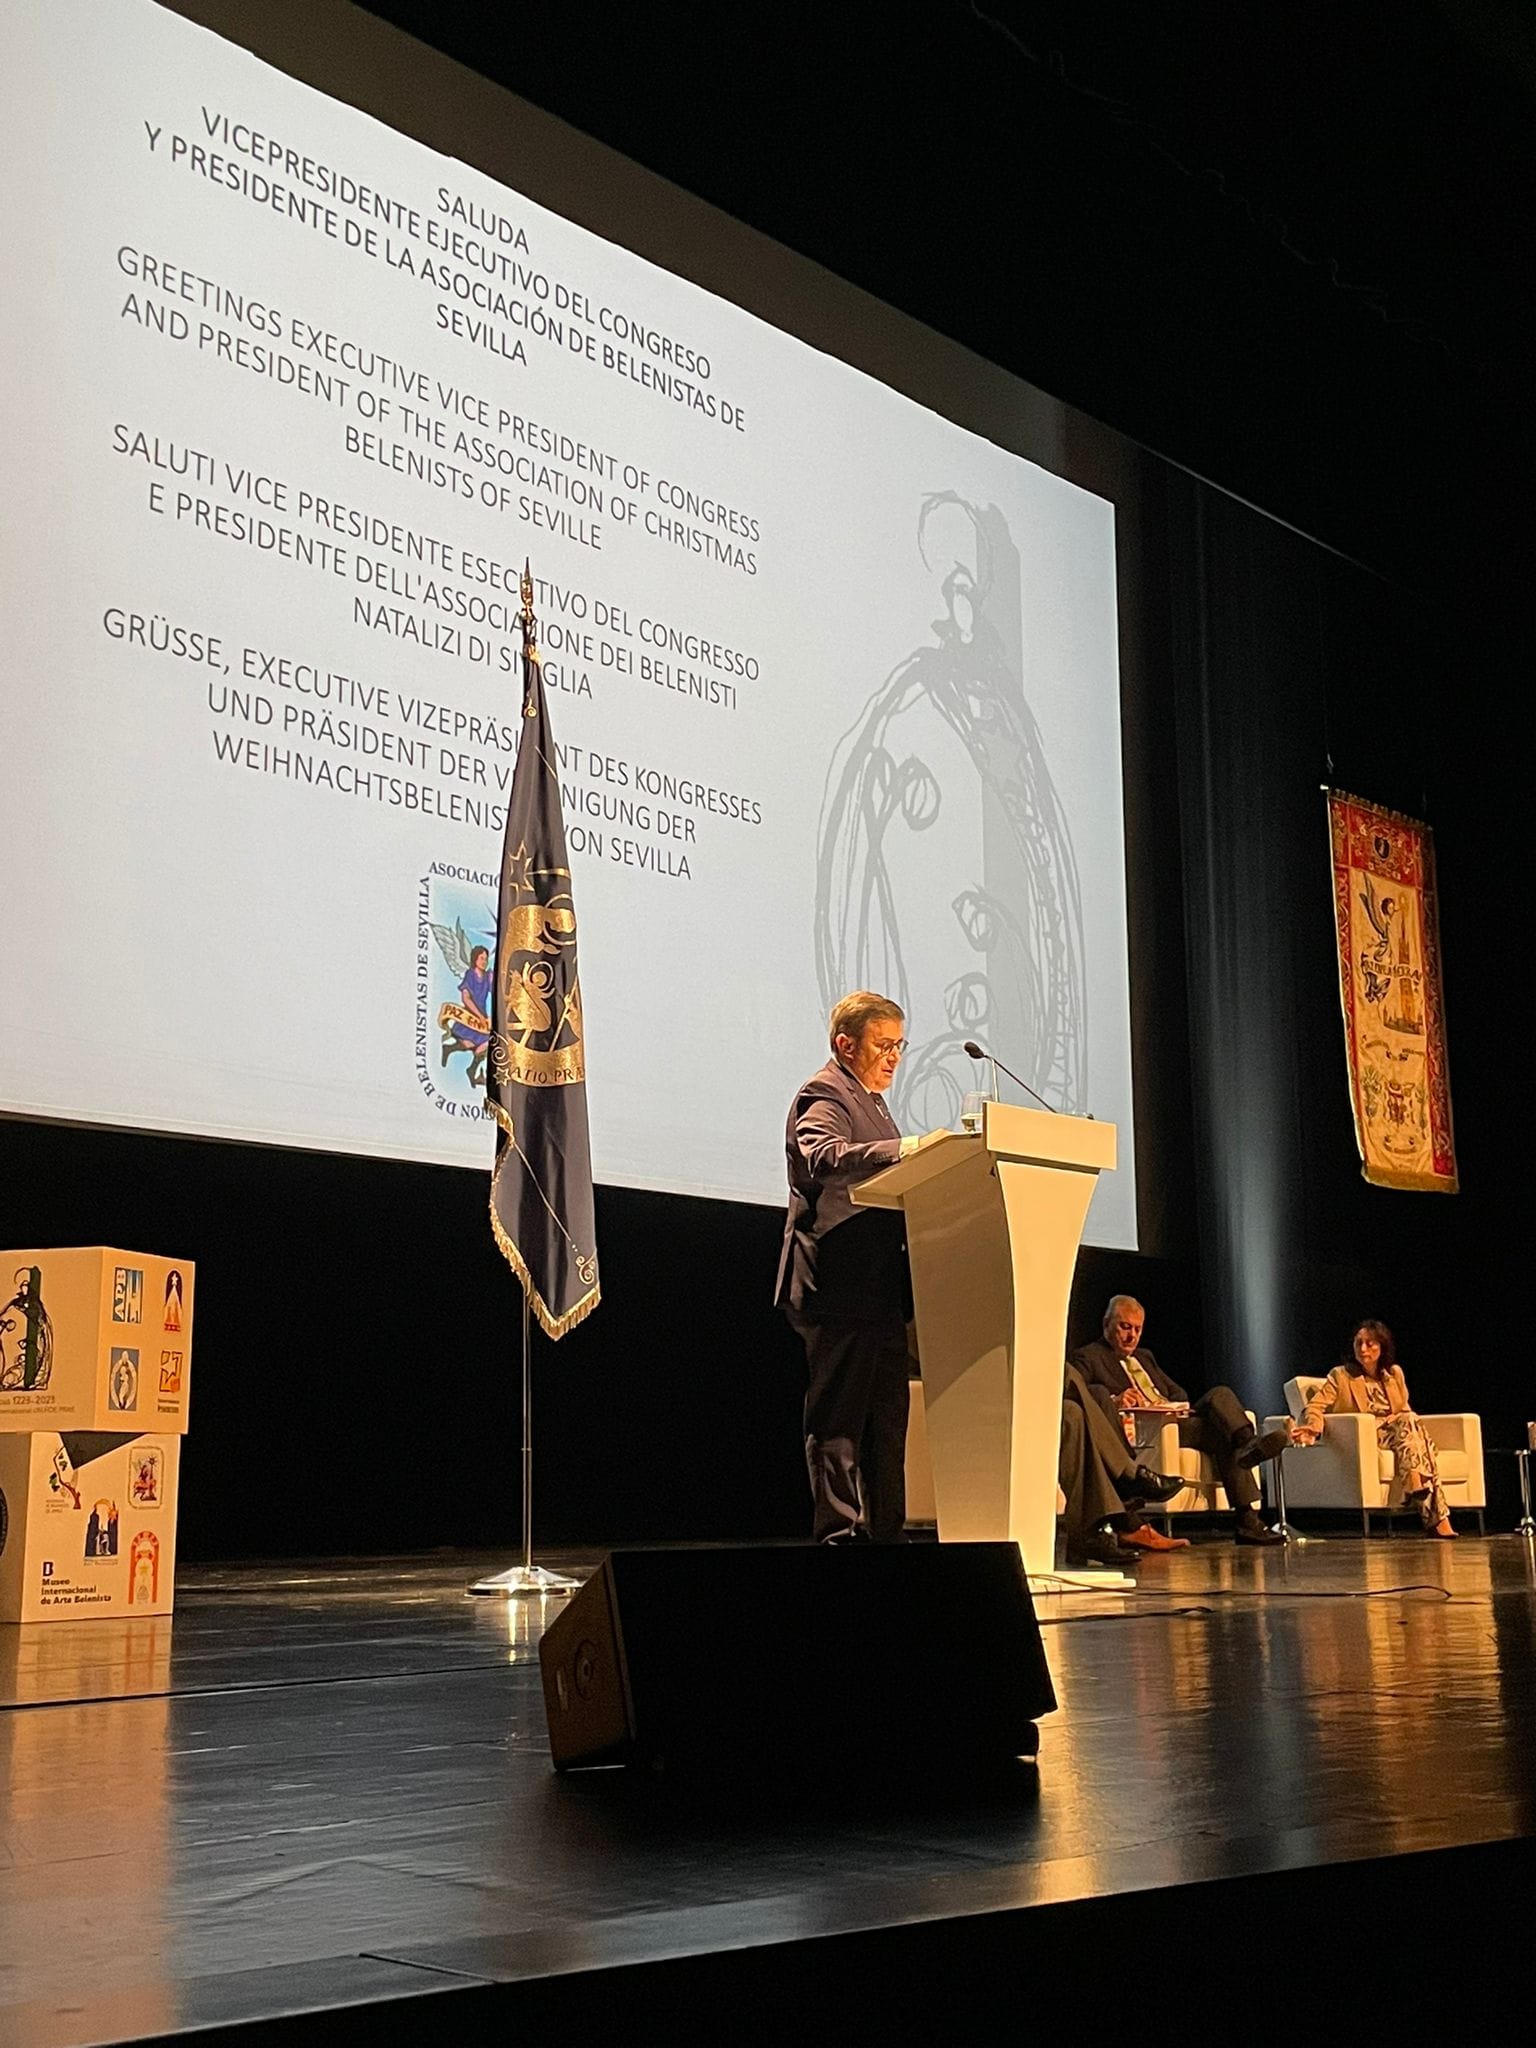 L’Associació Pessebrista de Tarragona assisteix al XXII Congrés Internacional Un-Foe-Prae i al LXI Congreso Nacional Belenista